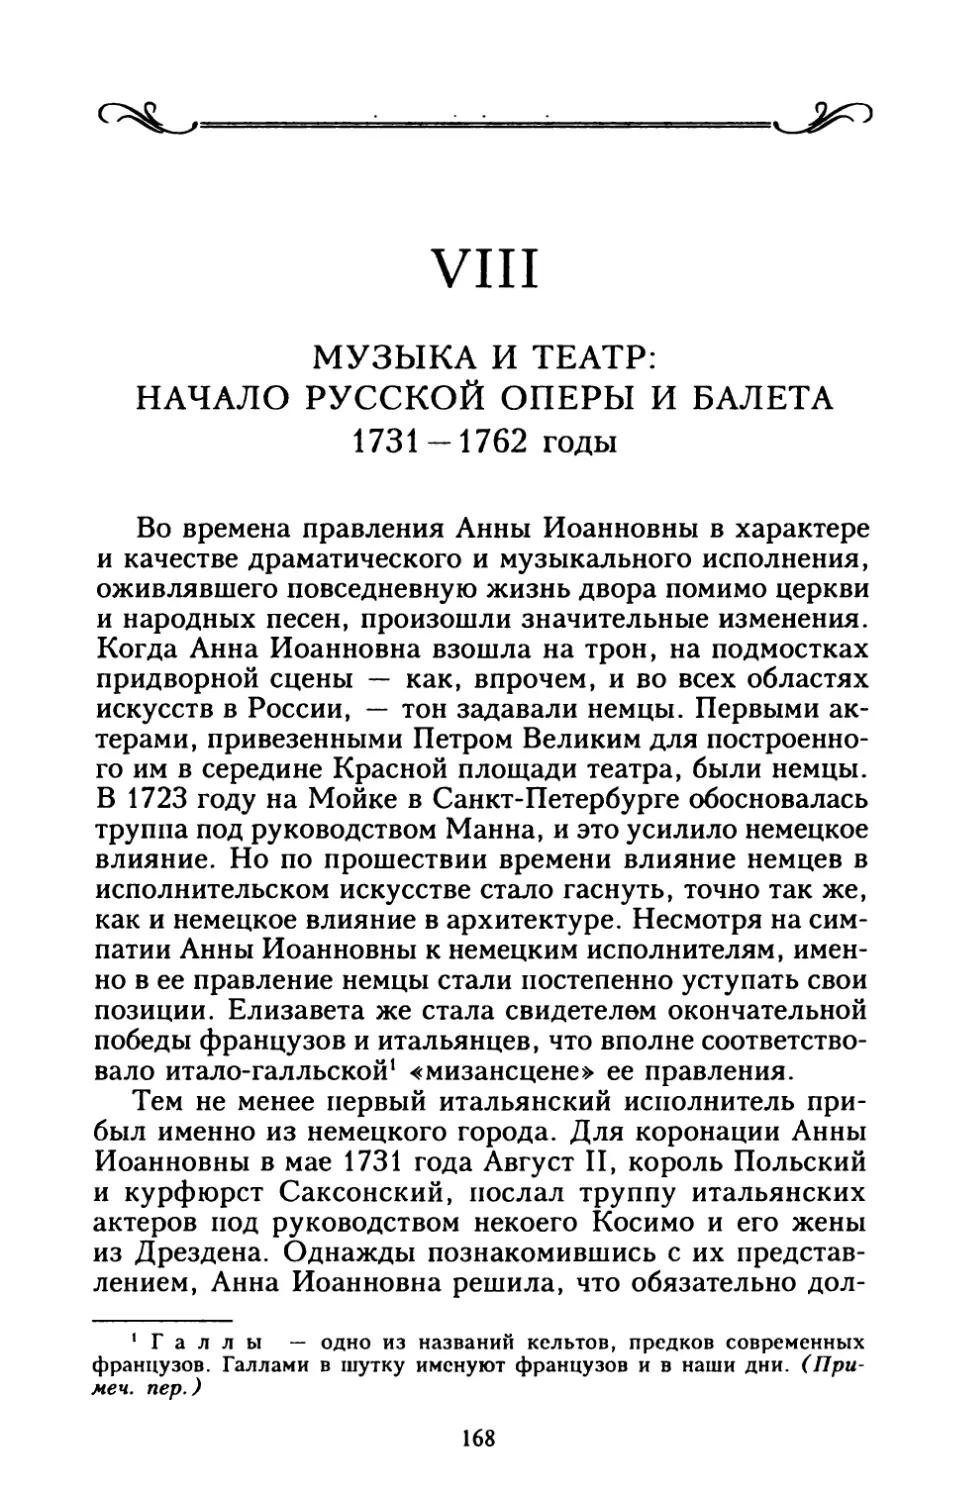 VIII. МУЗЫКА И ТЕАТР: НАЧАЛО РУССКОЙ ОПЕРЫ И БАЛЕТА 1731 — 1762 годы